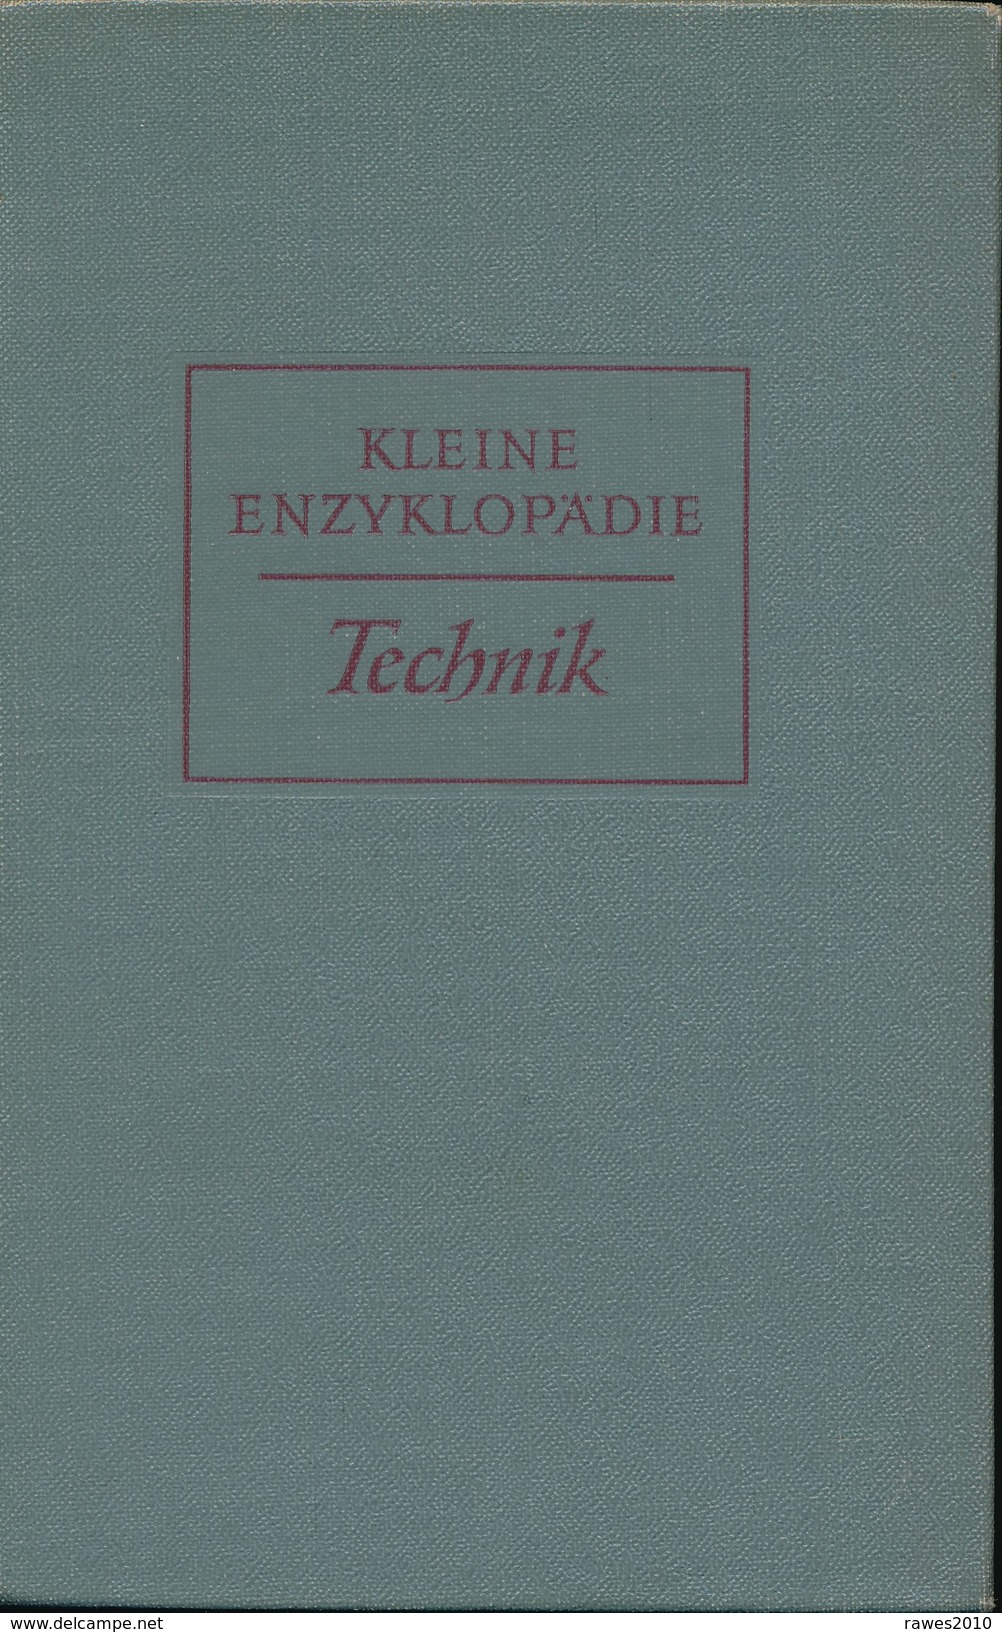 Buch: Kleine Enzyklopädie Technik Verlag Enzyklopädie Leipzig 1957 941 Seiten - Technical